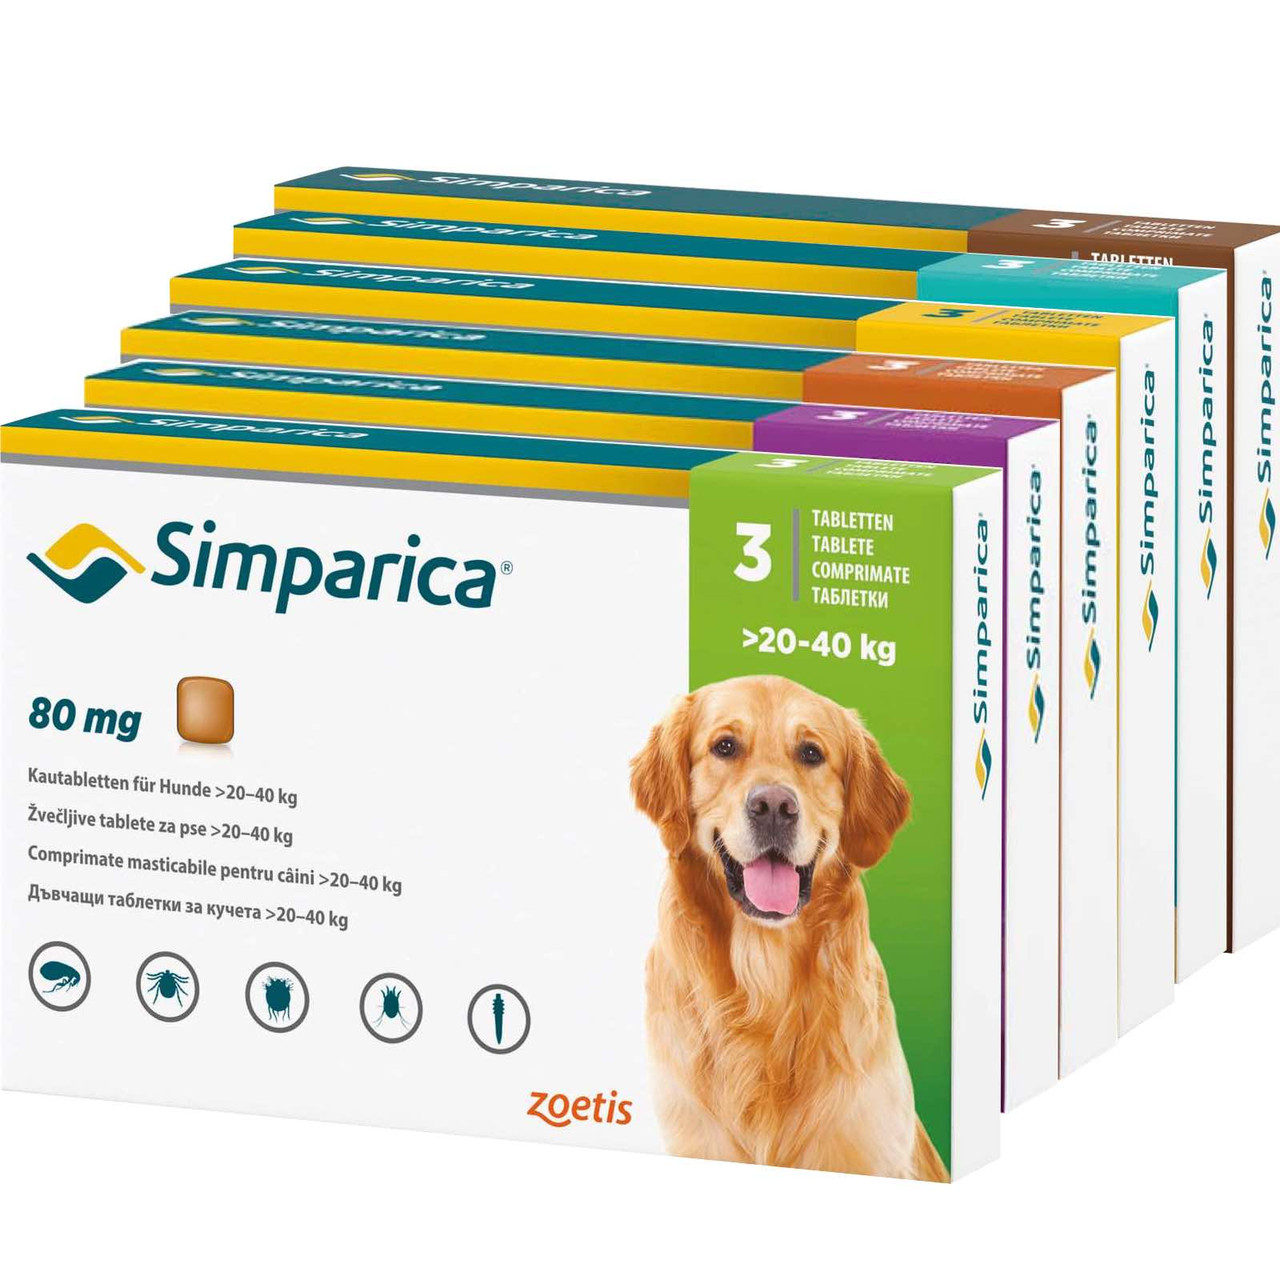 20% הנחה על טבליות לעיסות של Simparica נגד פרעושים וקרציות לכלבים באתר Atlantic Pet Products